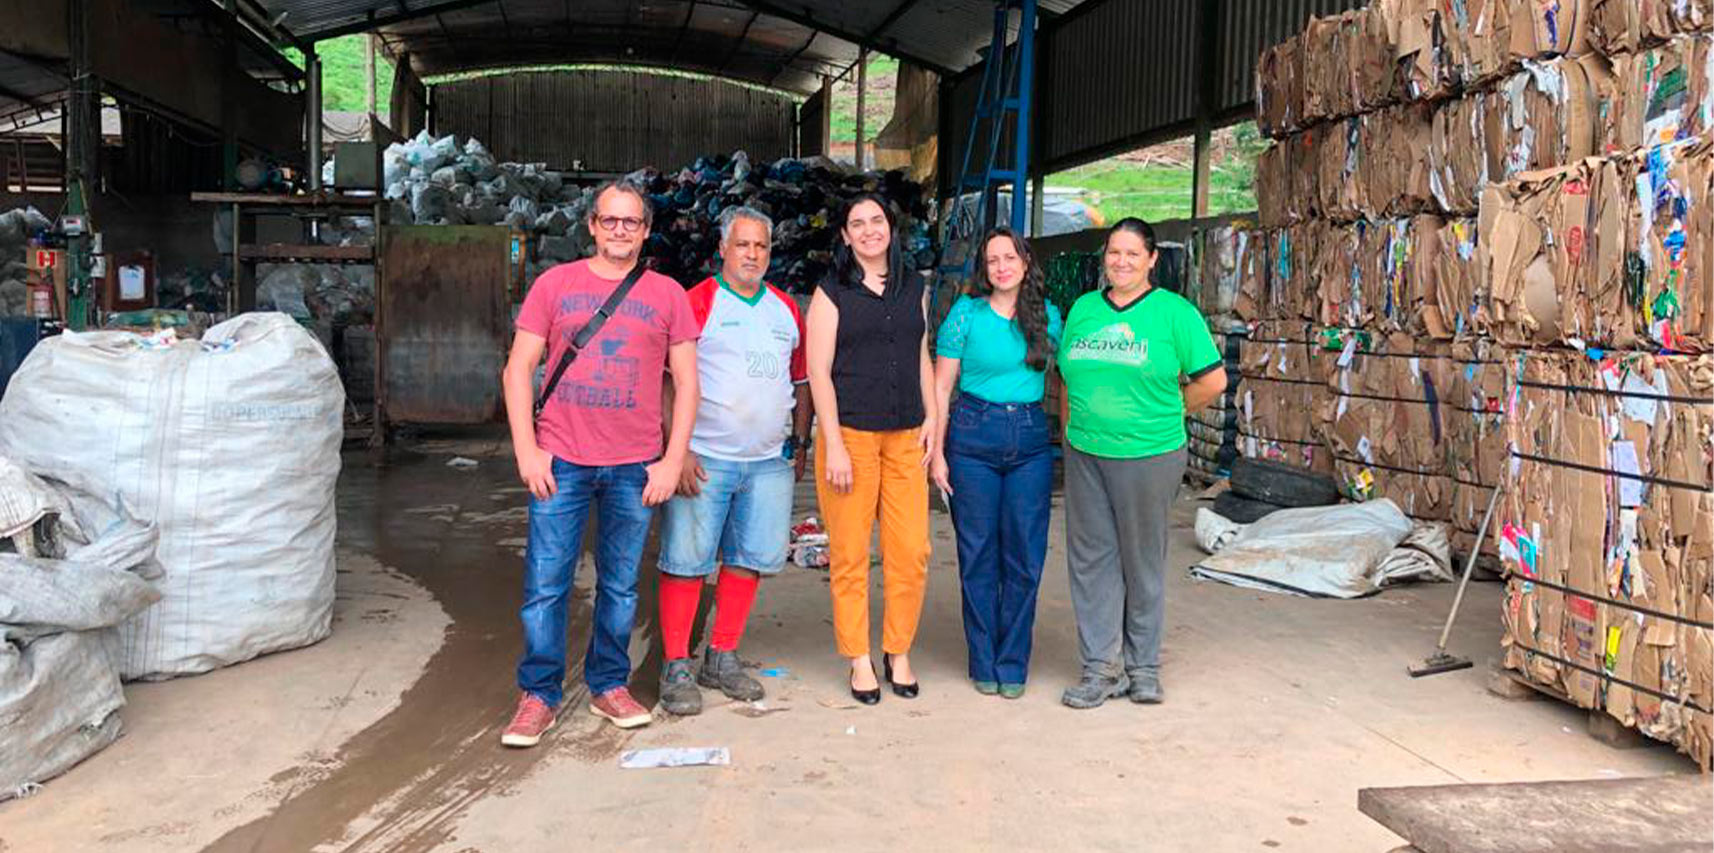 Representantes de Vargem Alta visitam associação de catadores de material reciclável de Venda Nova do Imigrante